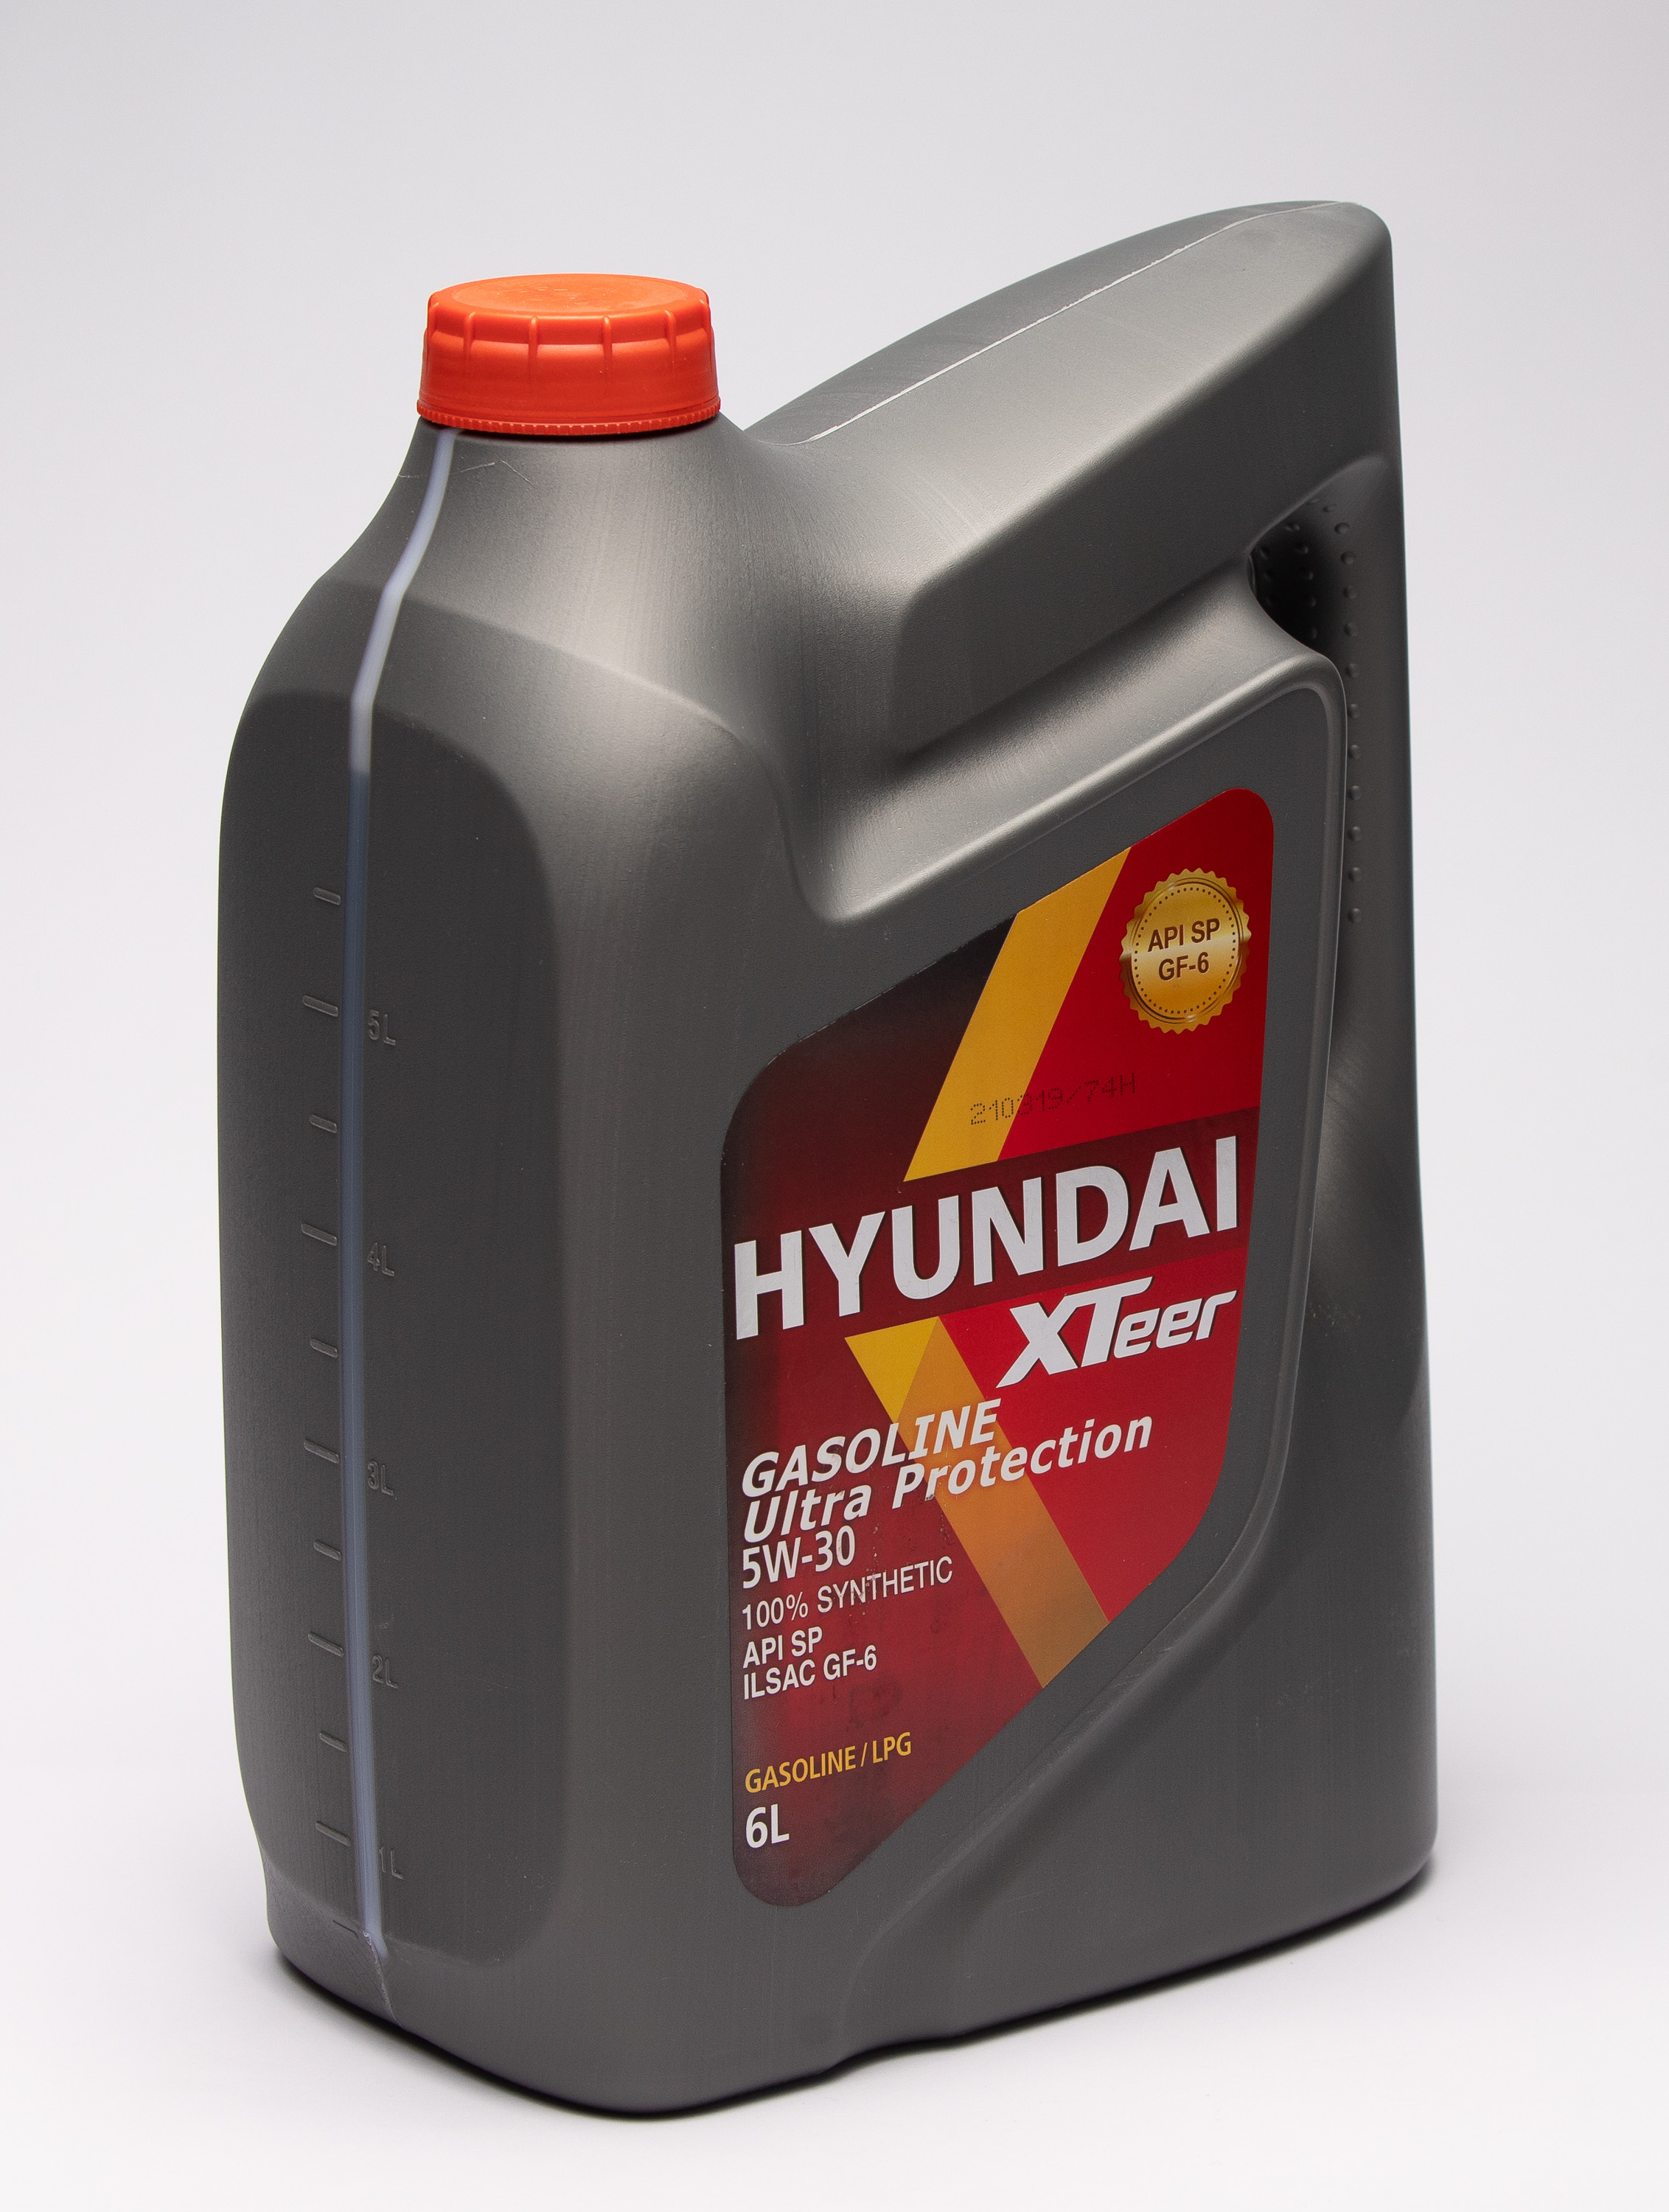 Hyundai xteer 5w 30 отзывы. Hyundai XTEER gasoline g700 5w-30. Hyundai XTEER 5w30 4л. Hyundai масло XTEER g700. XTEER g700 5w30.